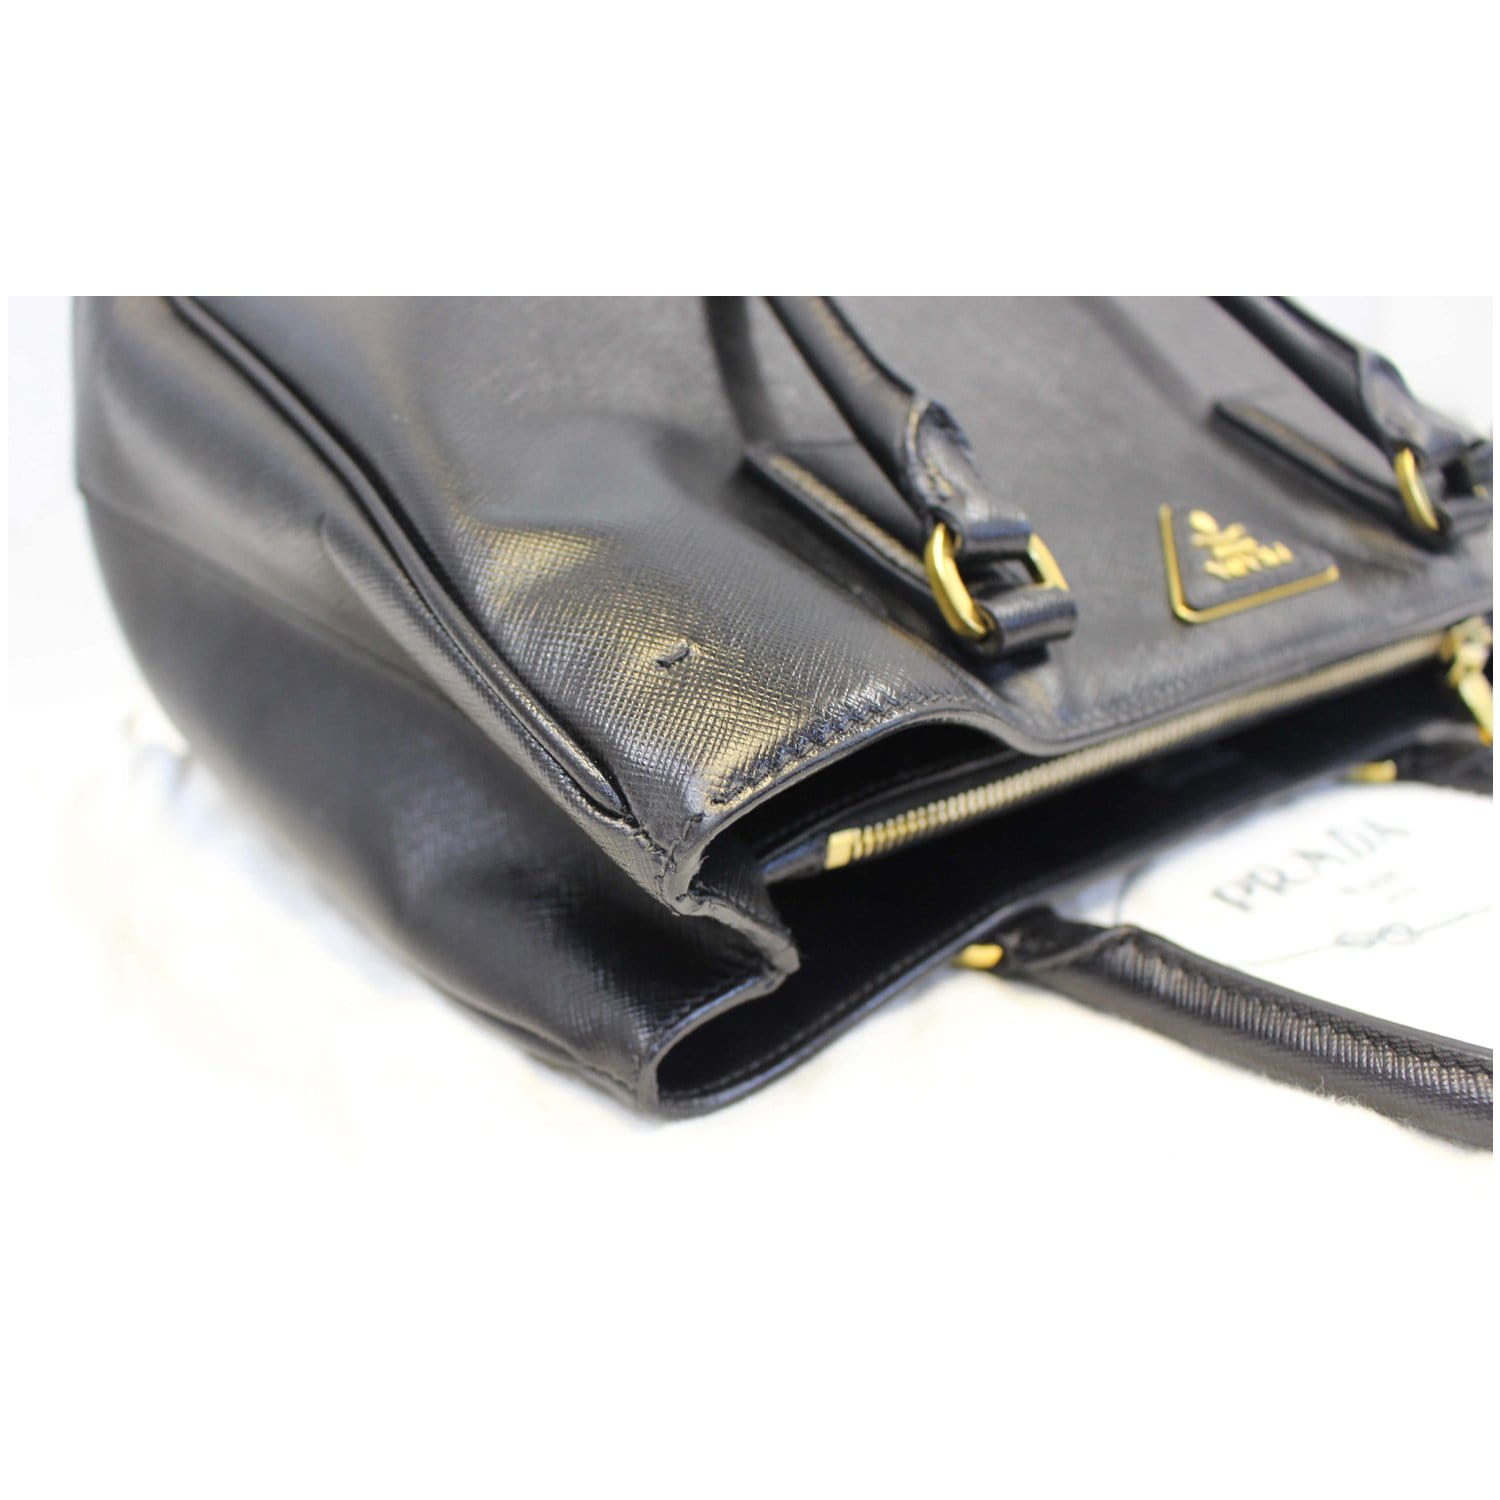 Prada Medium Galleria Saffiano-leather Tote Bag - Black